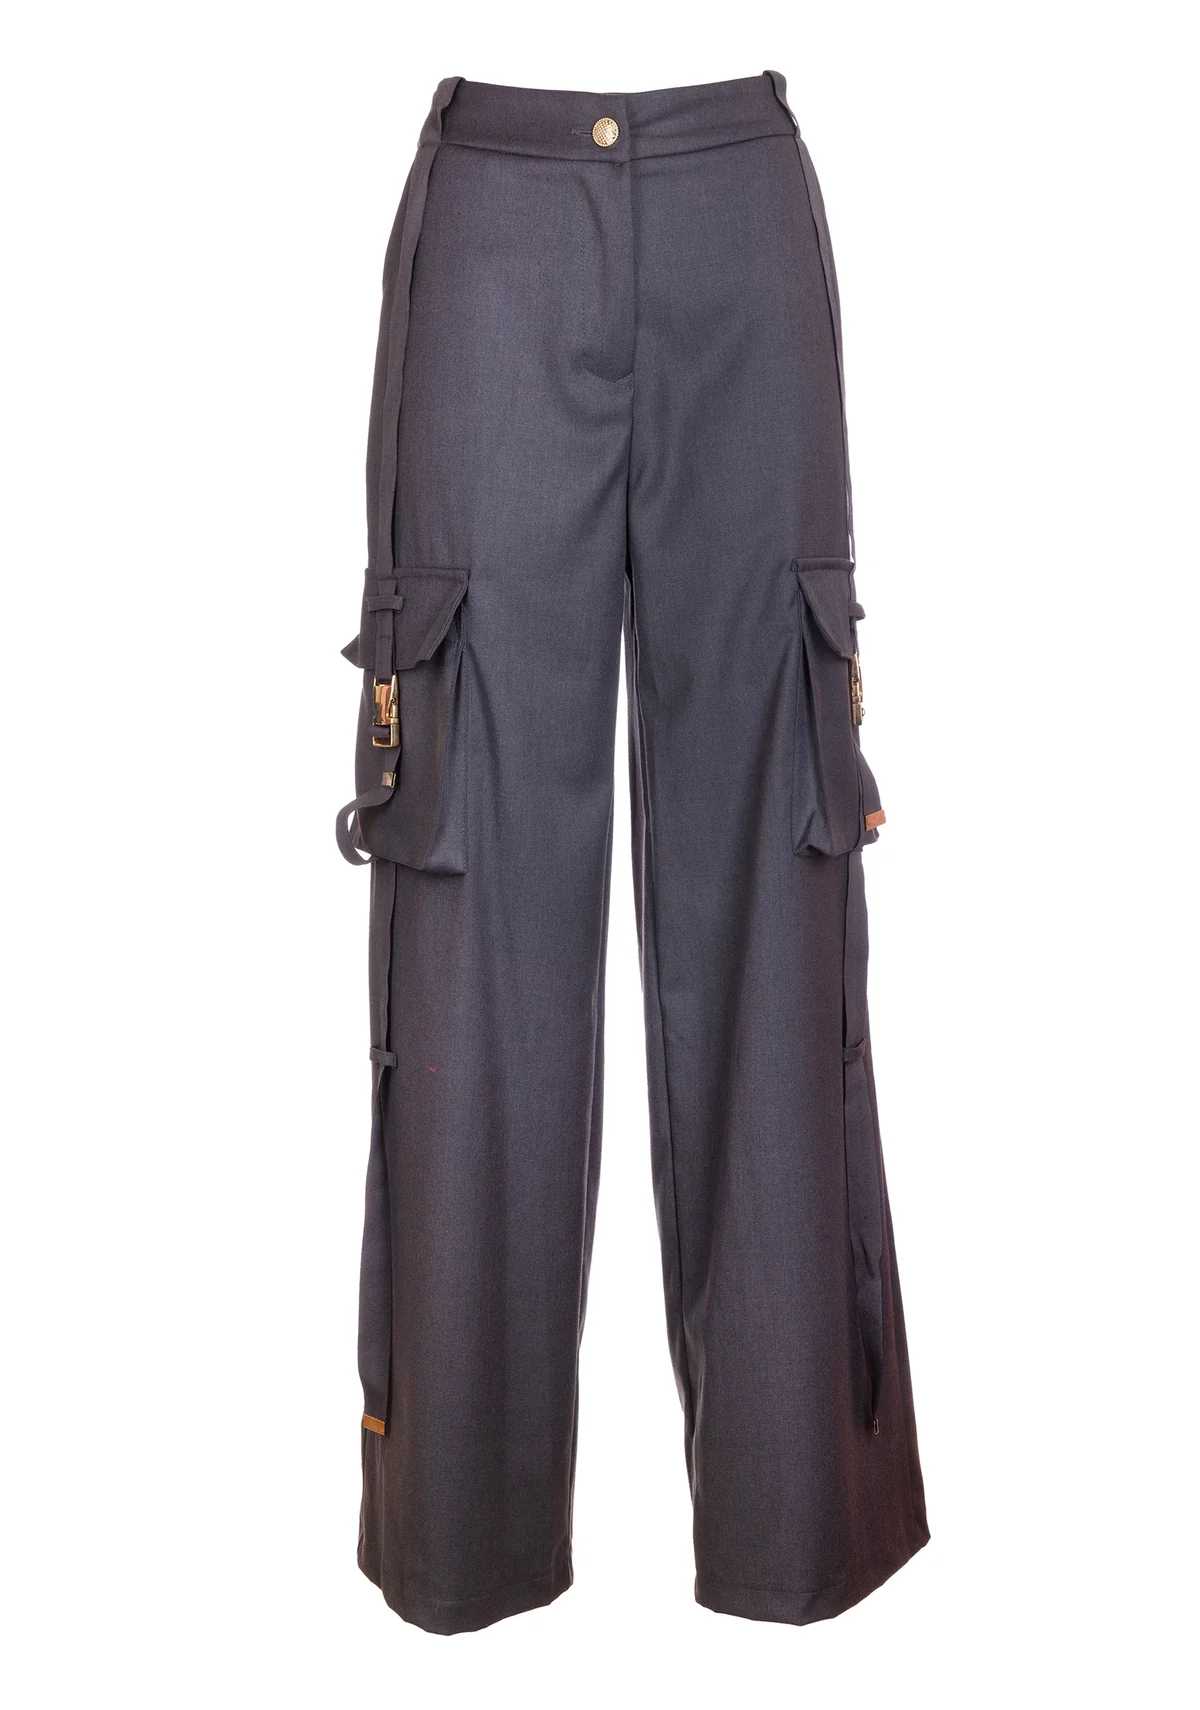 FRACOMINA pantalón cargo color gris con hebilla - 2